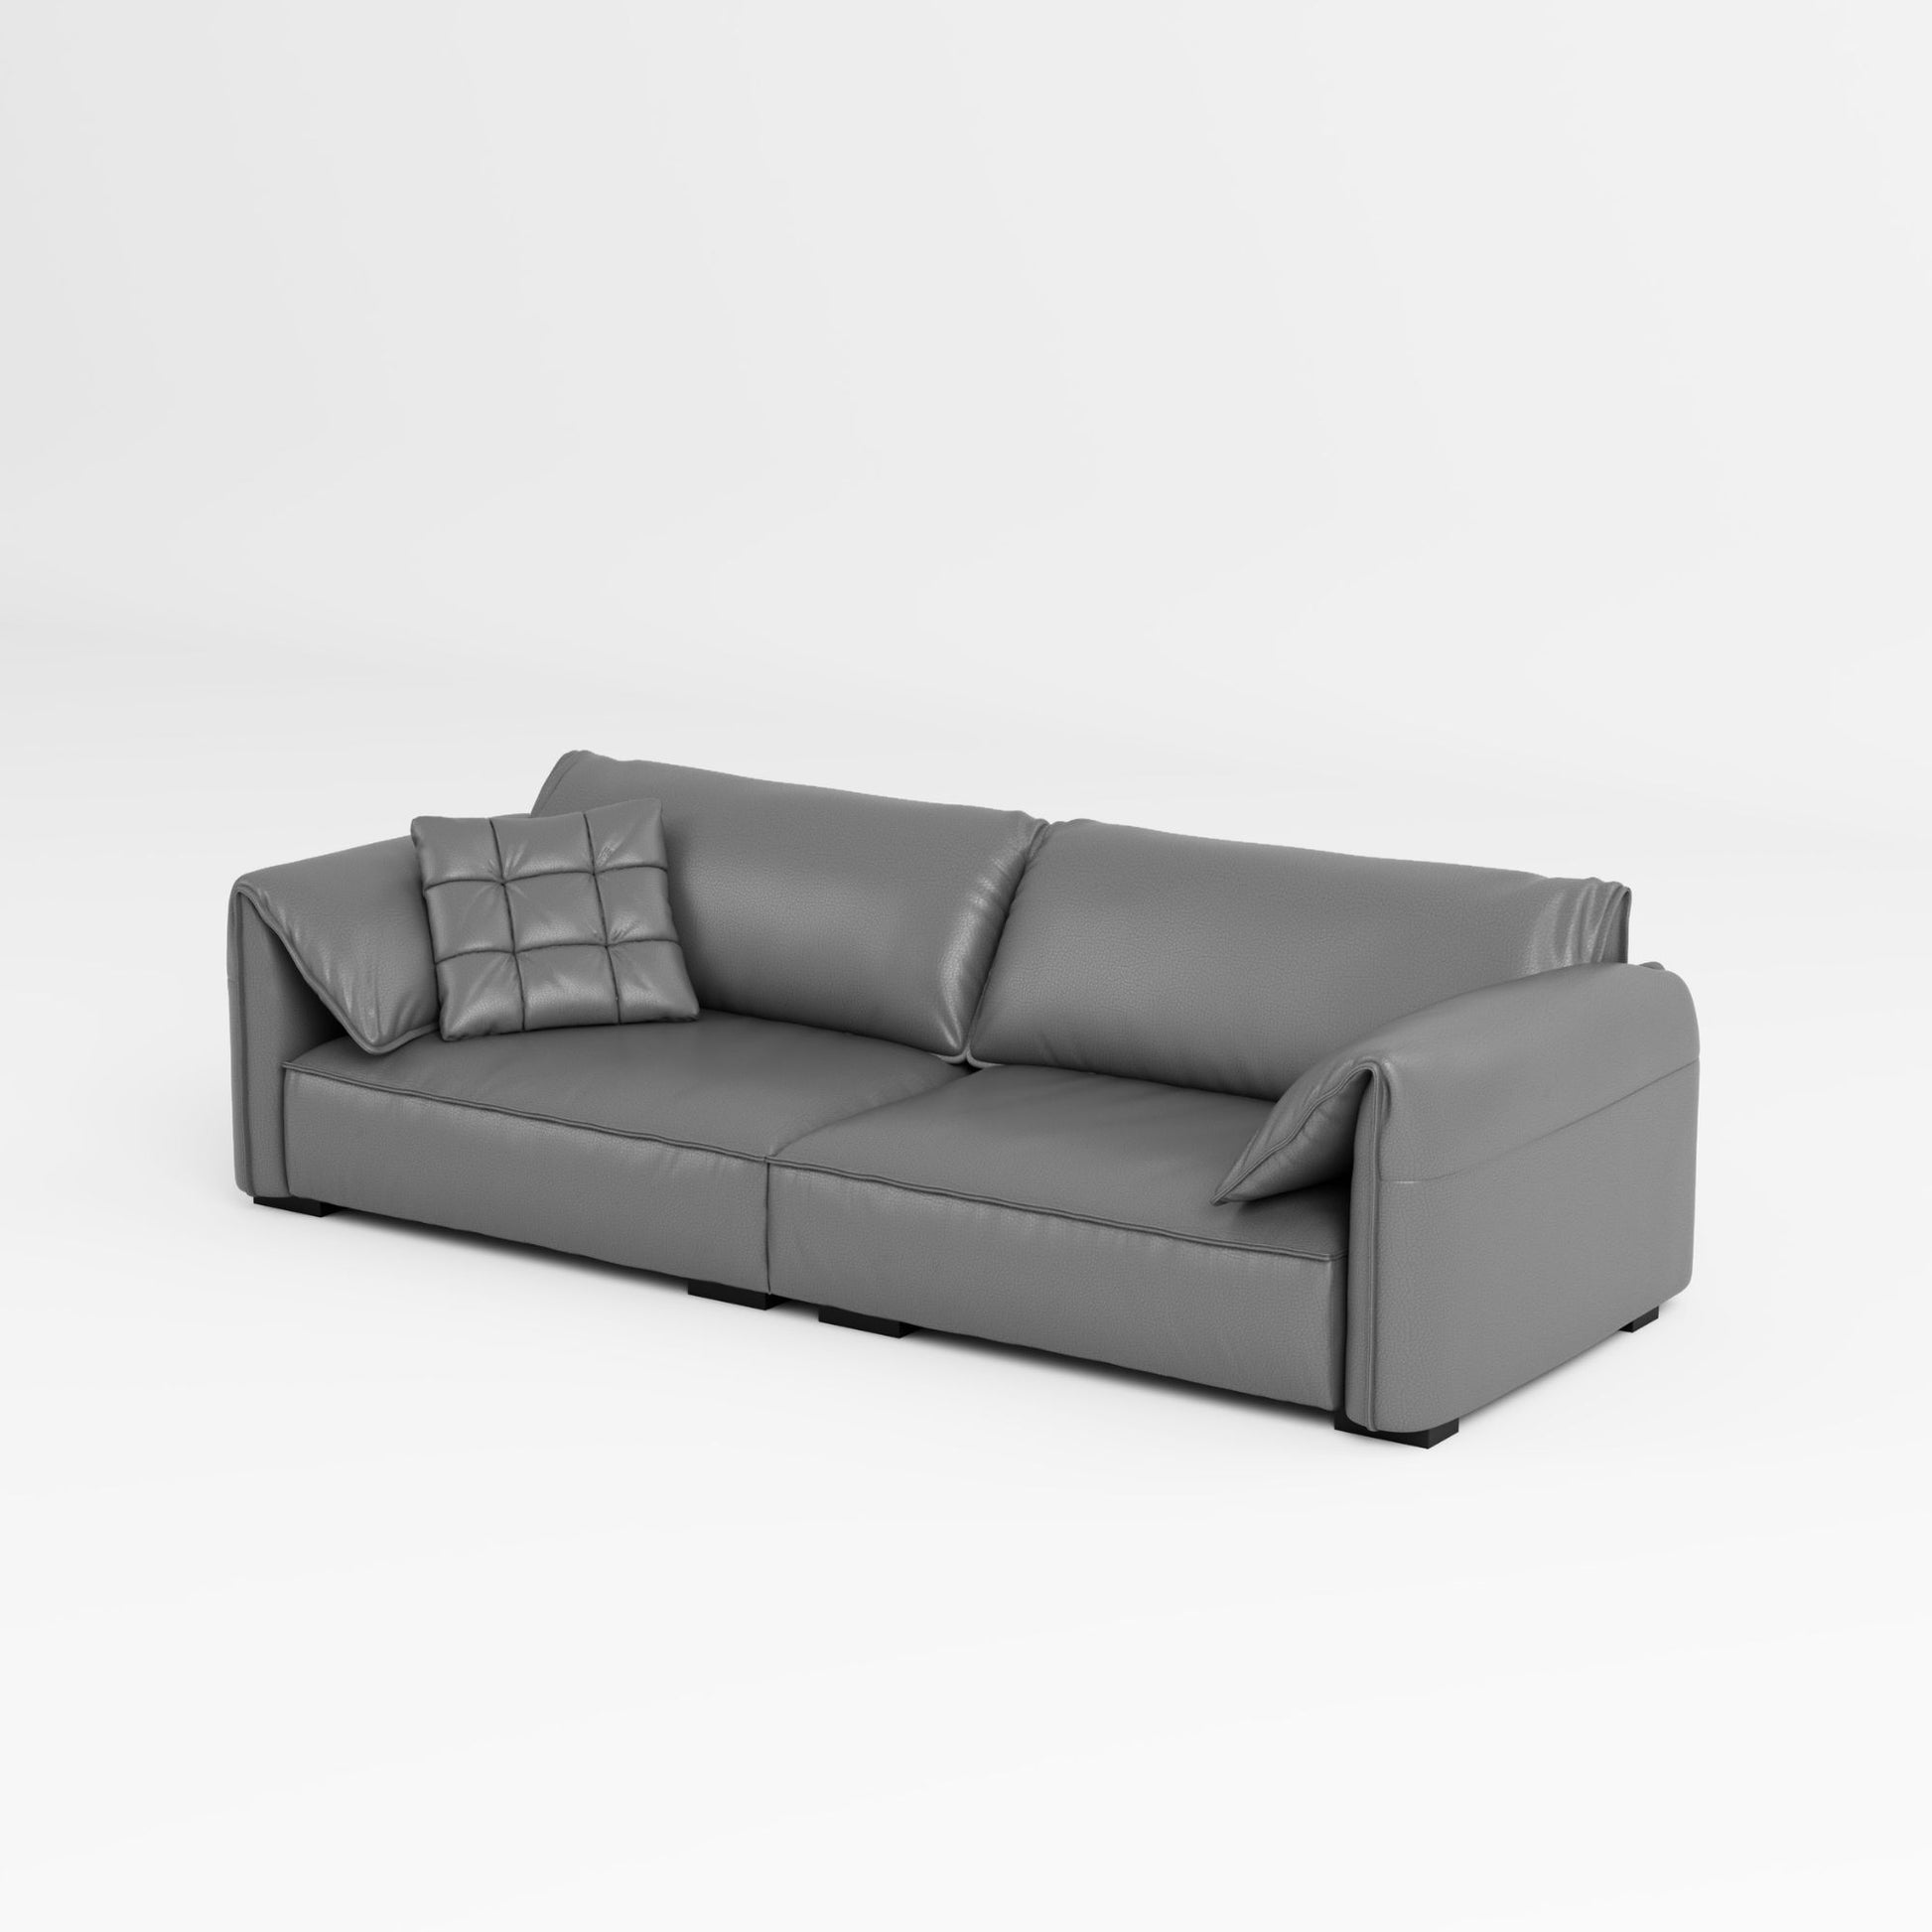 Comfy grey top grain half leather sofa